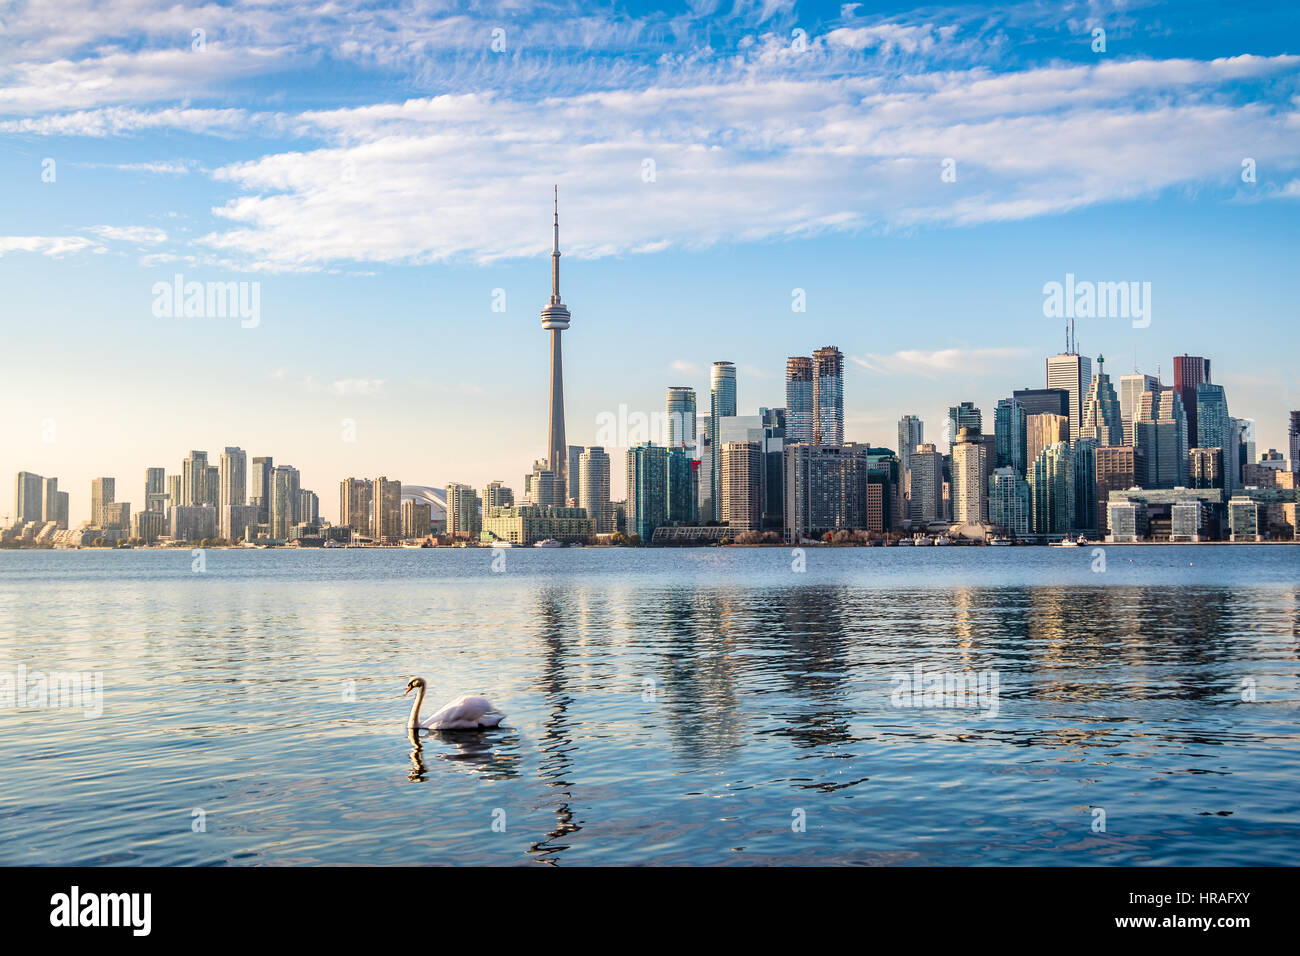 Horizonte de Toronto y el cisne nadando en el lago Ontario - Toronto, Ontario, Canadá Foto de stock